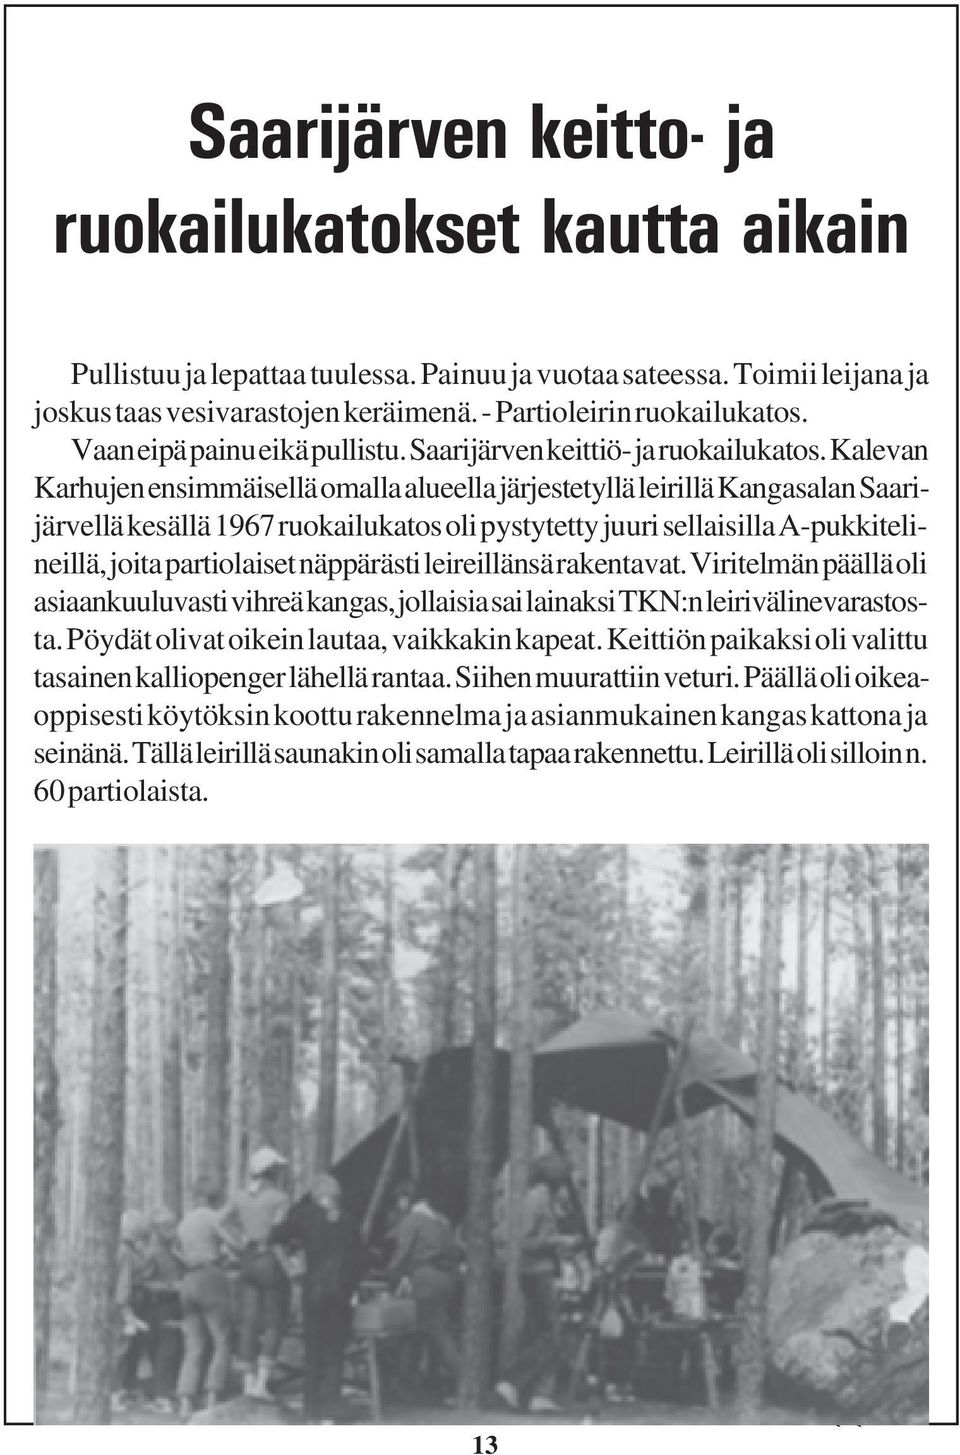 Kalevan Karhujen ensimmäisellä omalla alueella järjestetyllä leirillä Kangasalan Saarijärvellä kesällä 1967 ruokailukatos oli pystytetty juuri sellaisilla A-pukkitelineillä, joita partiolaiset